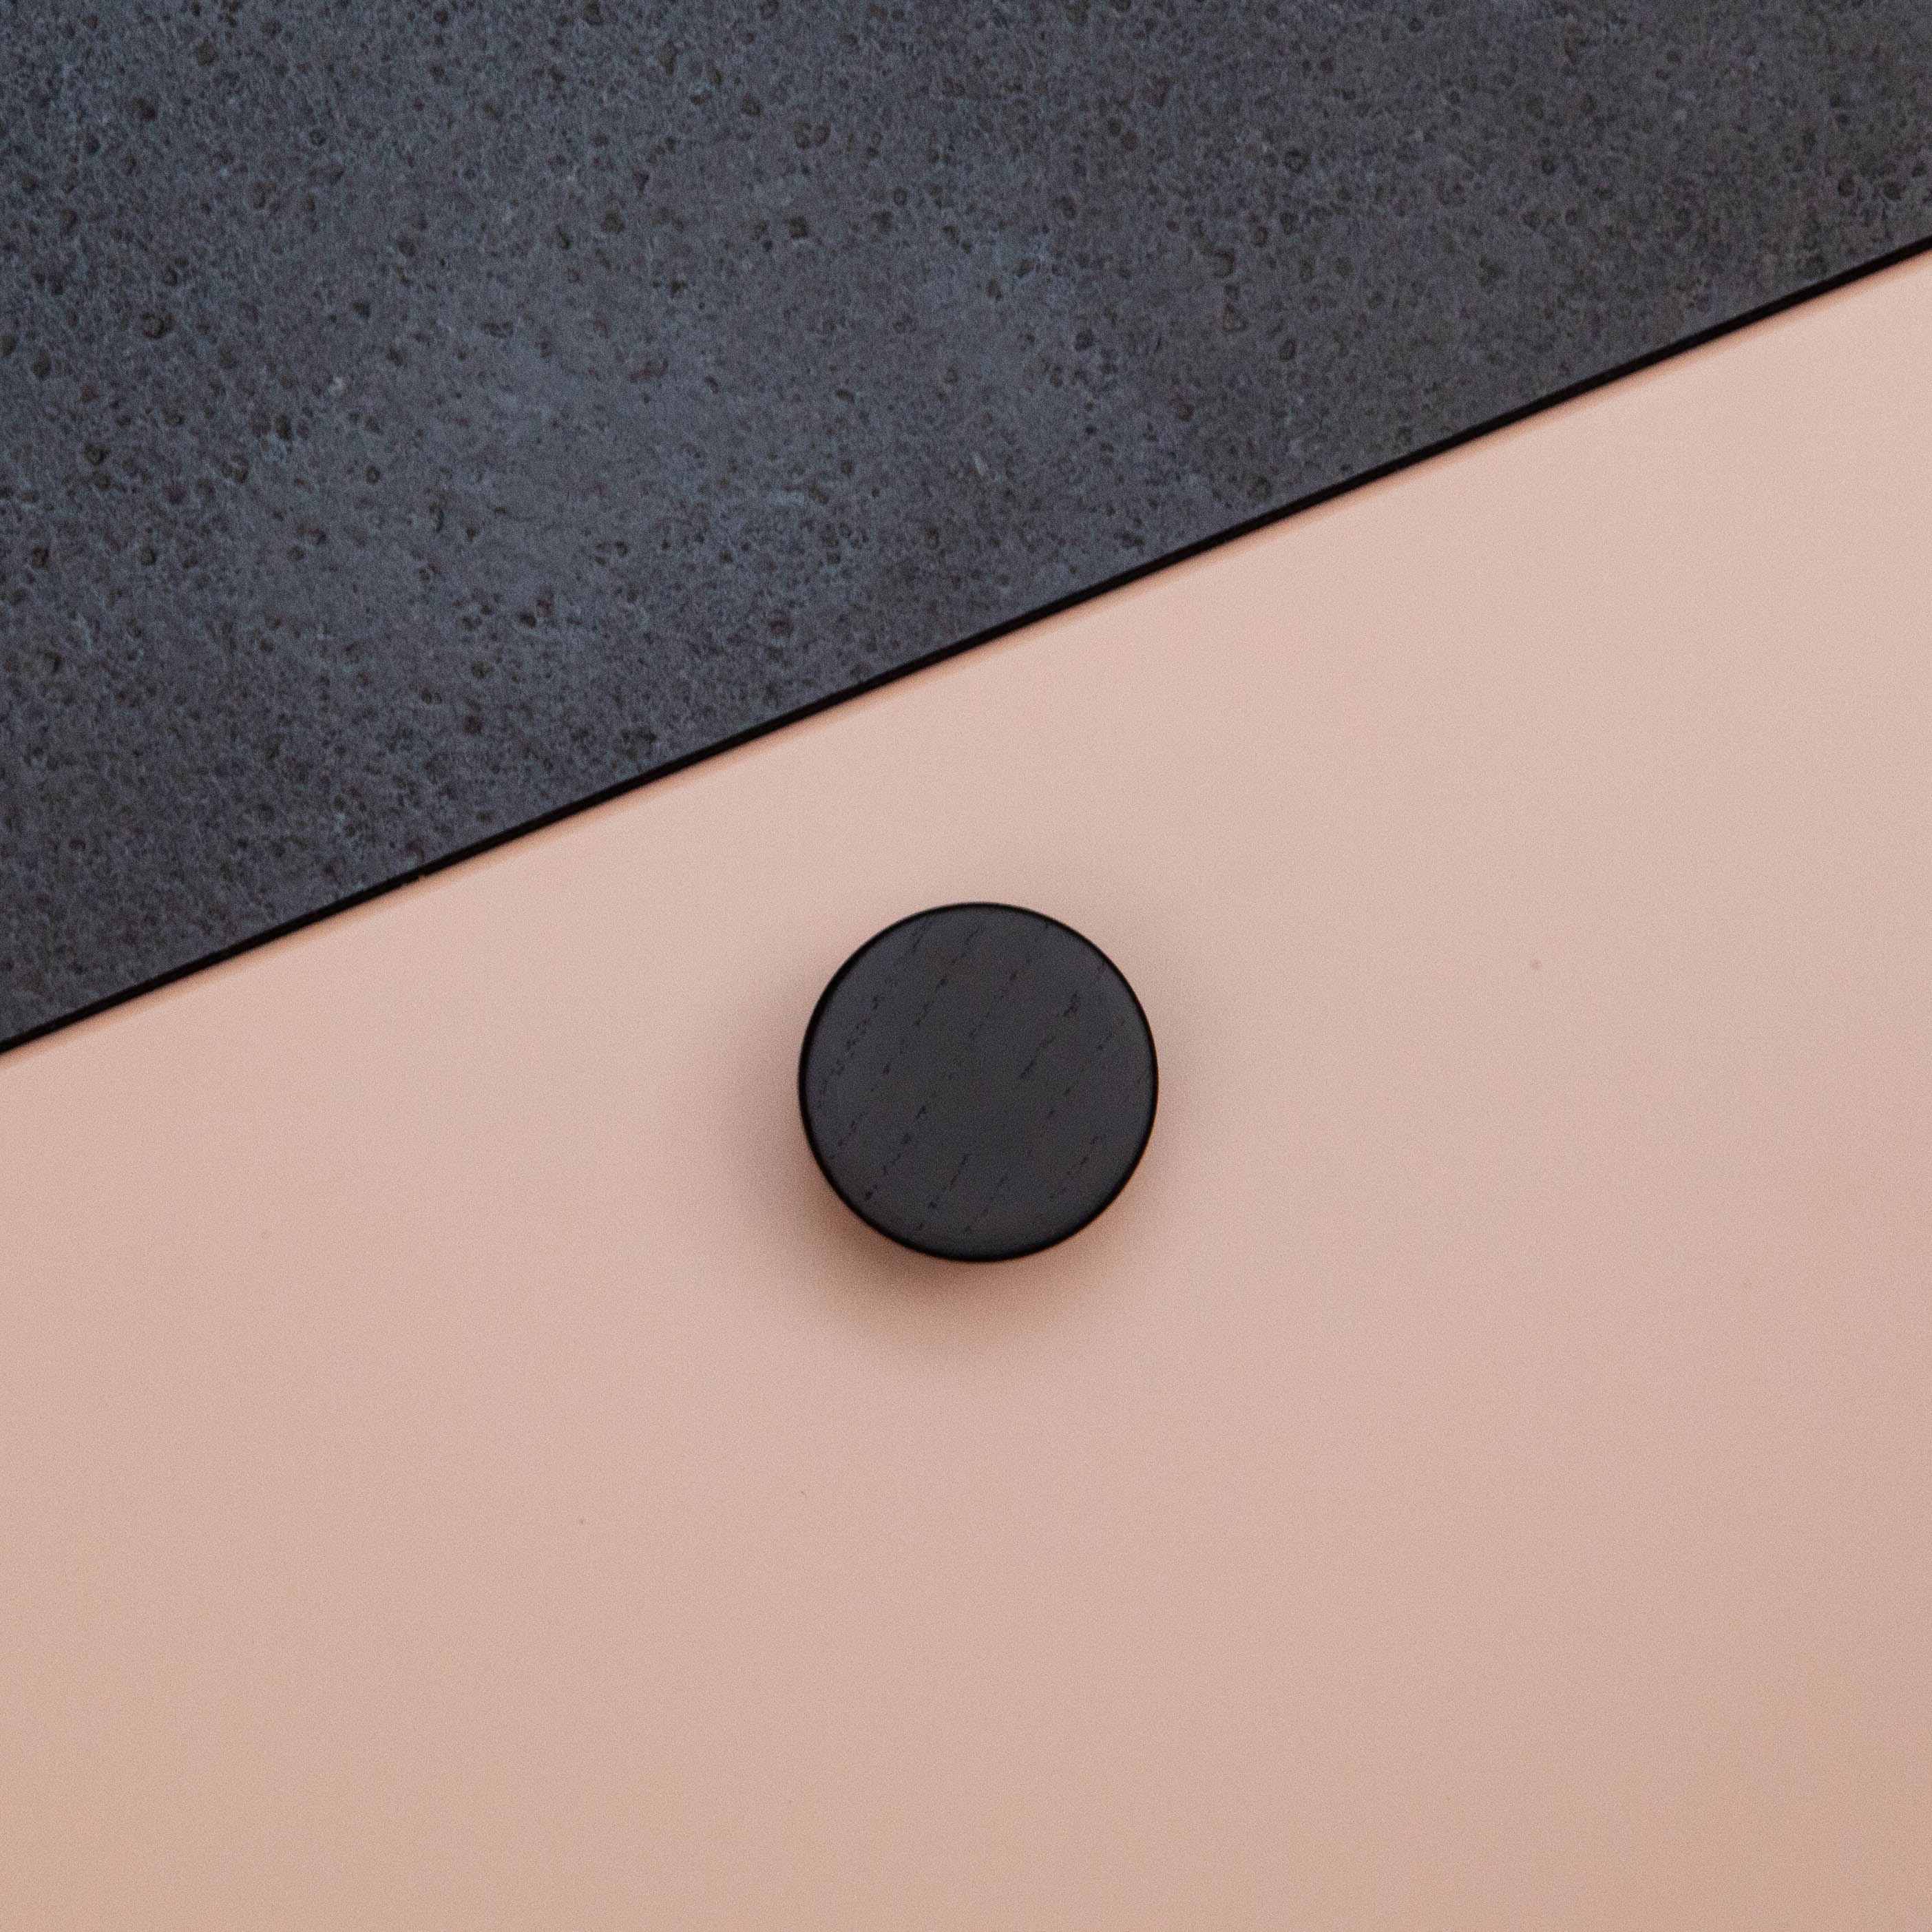 Bouton Bouton Circum, couleur Bois noir, ref 255640-11, dimensions 33 x 33 mm